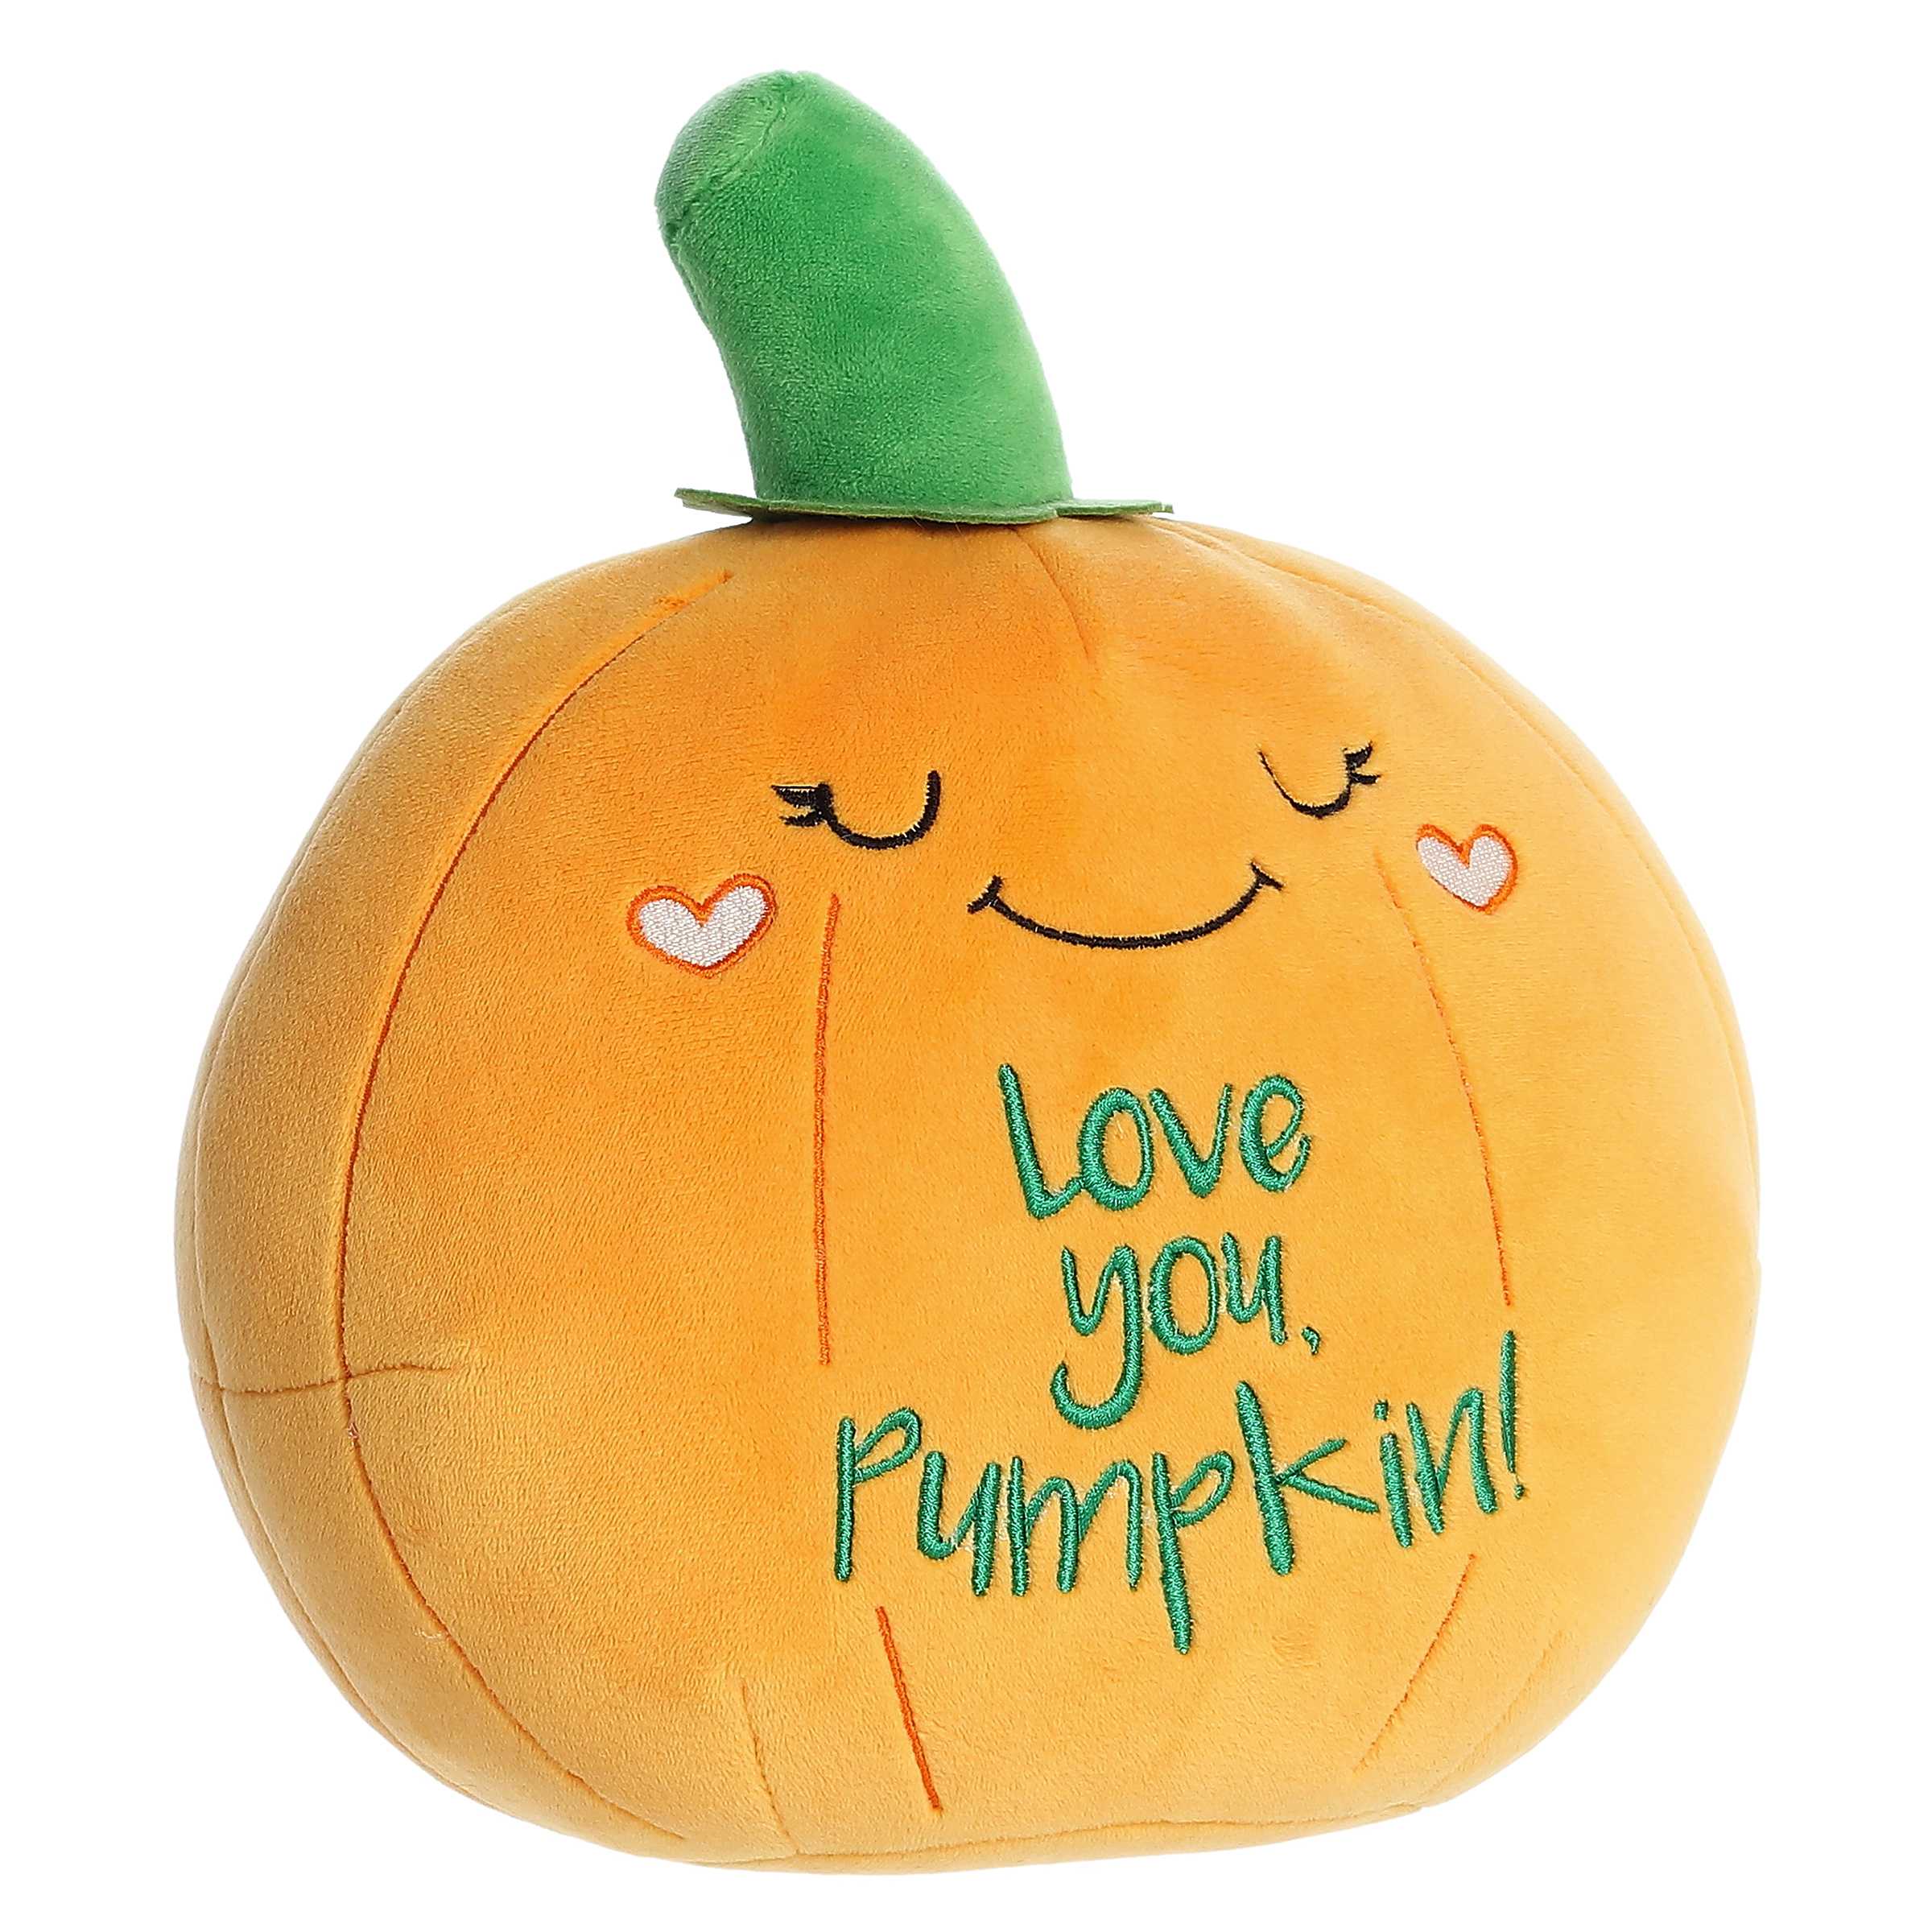 Aurora® - JUST SAYIN'™ - 9" Love You Pumpkin™